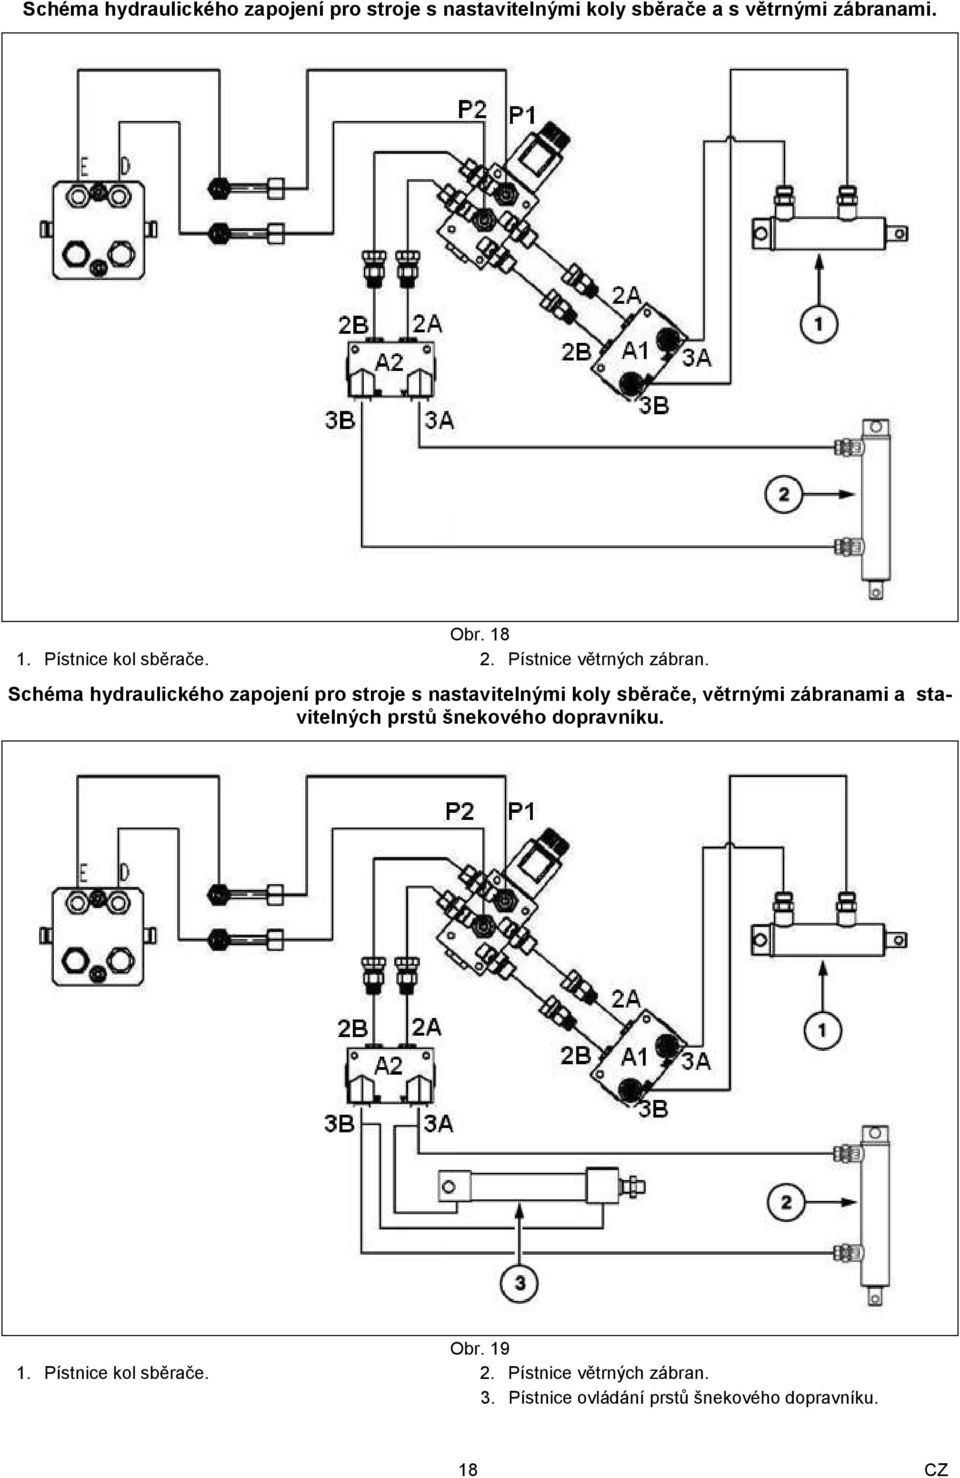 Schéma hydraulického zapojení pro stroje s nastavitelnými koly sběrače, větrnými zábranami a